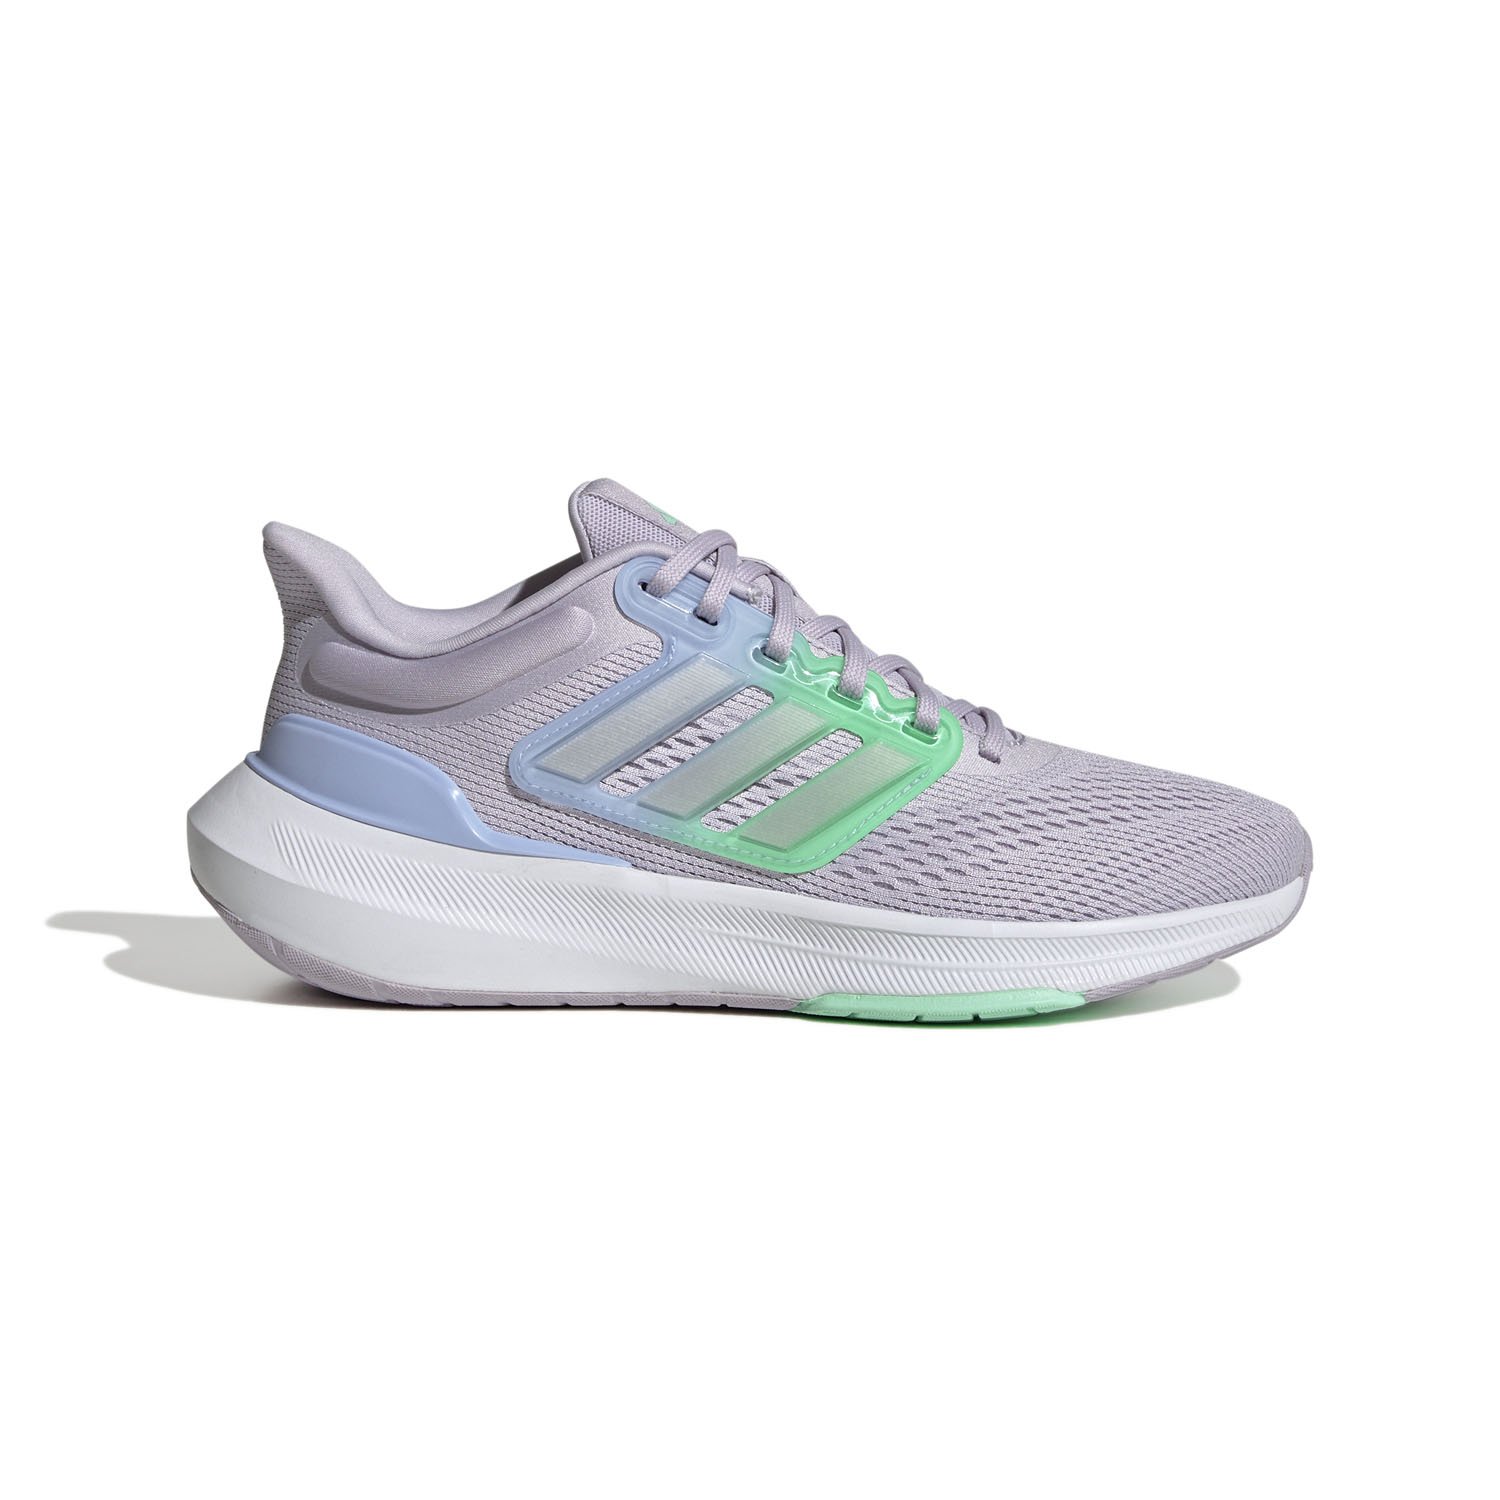 Adidas Ultrabounce Kadın Yol Koşu Ayakkabısı - Gri - 1